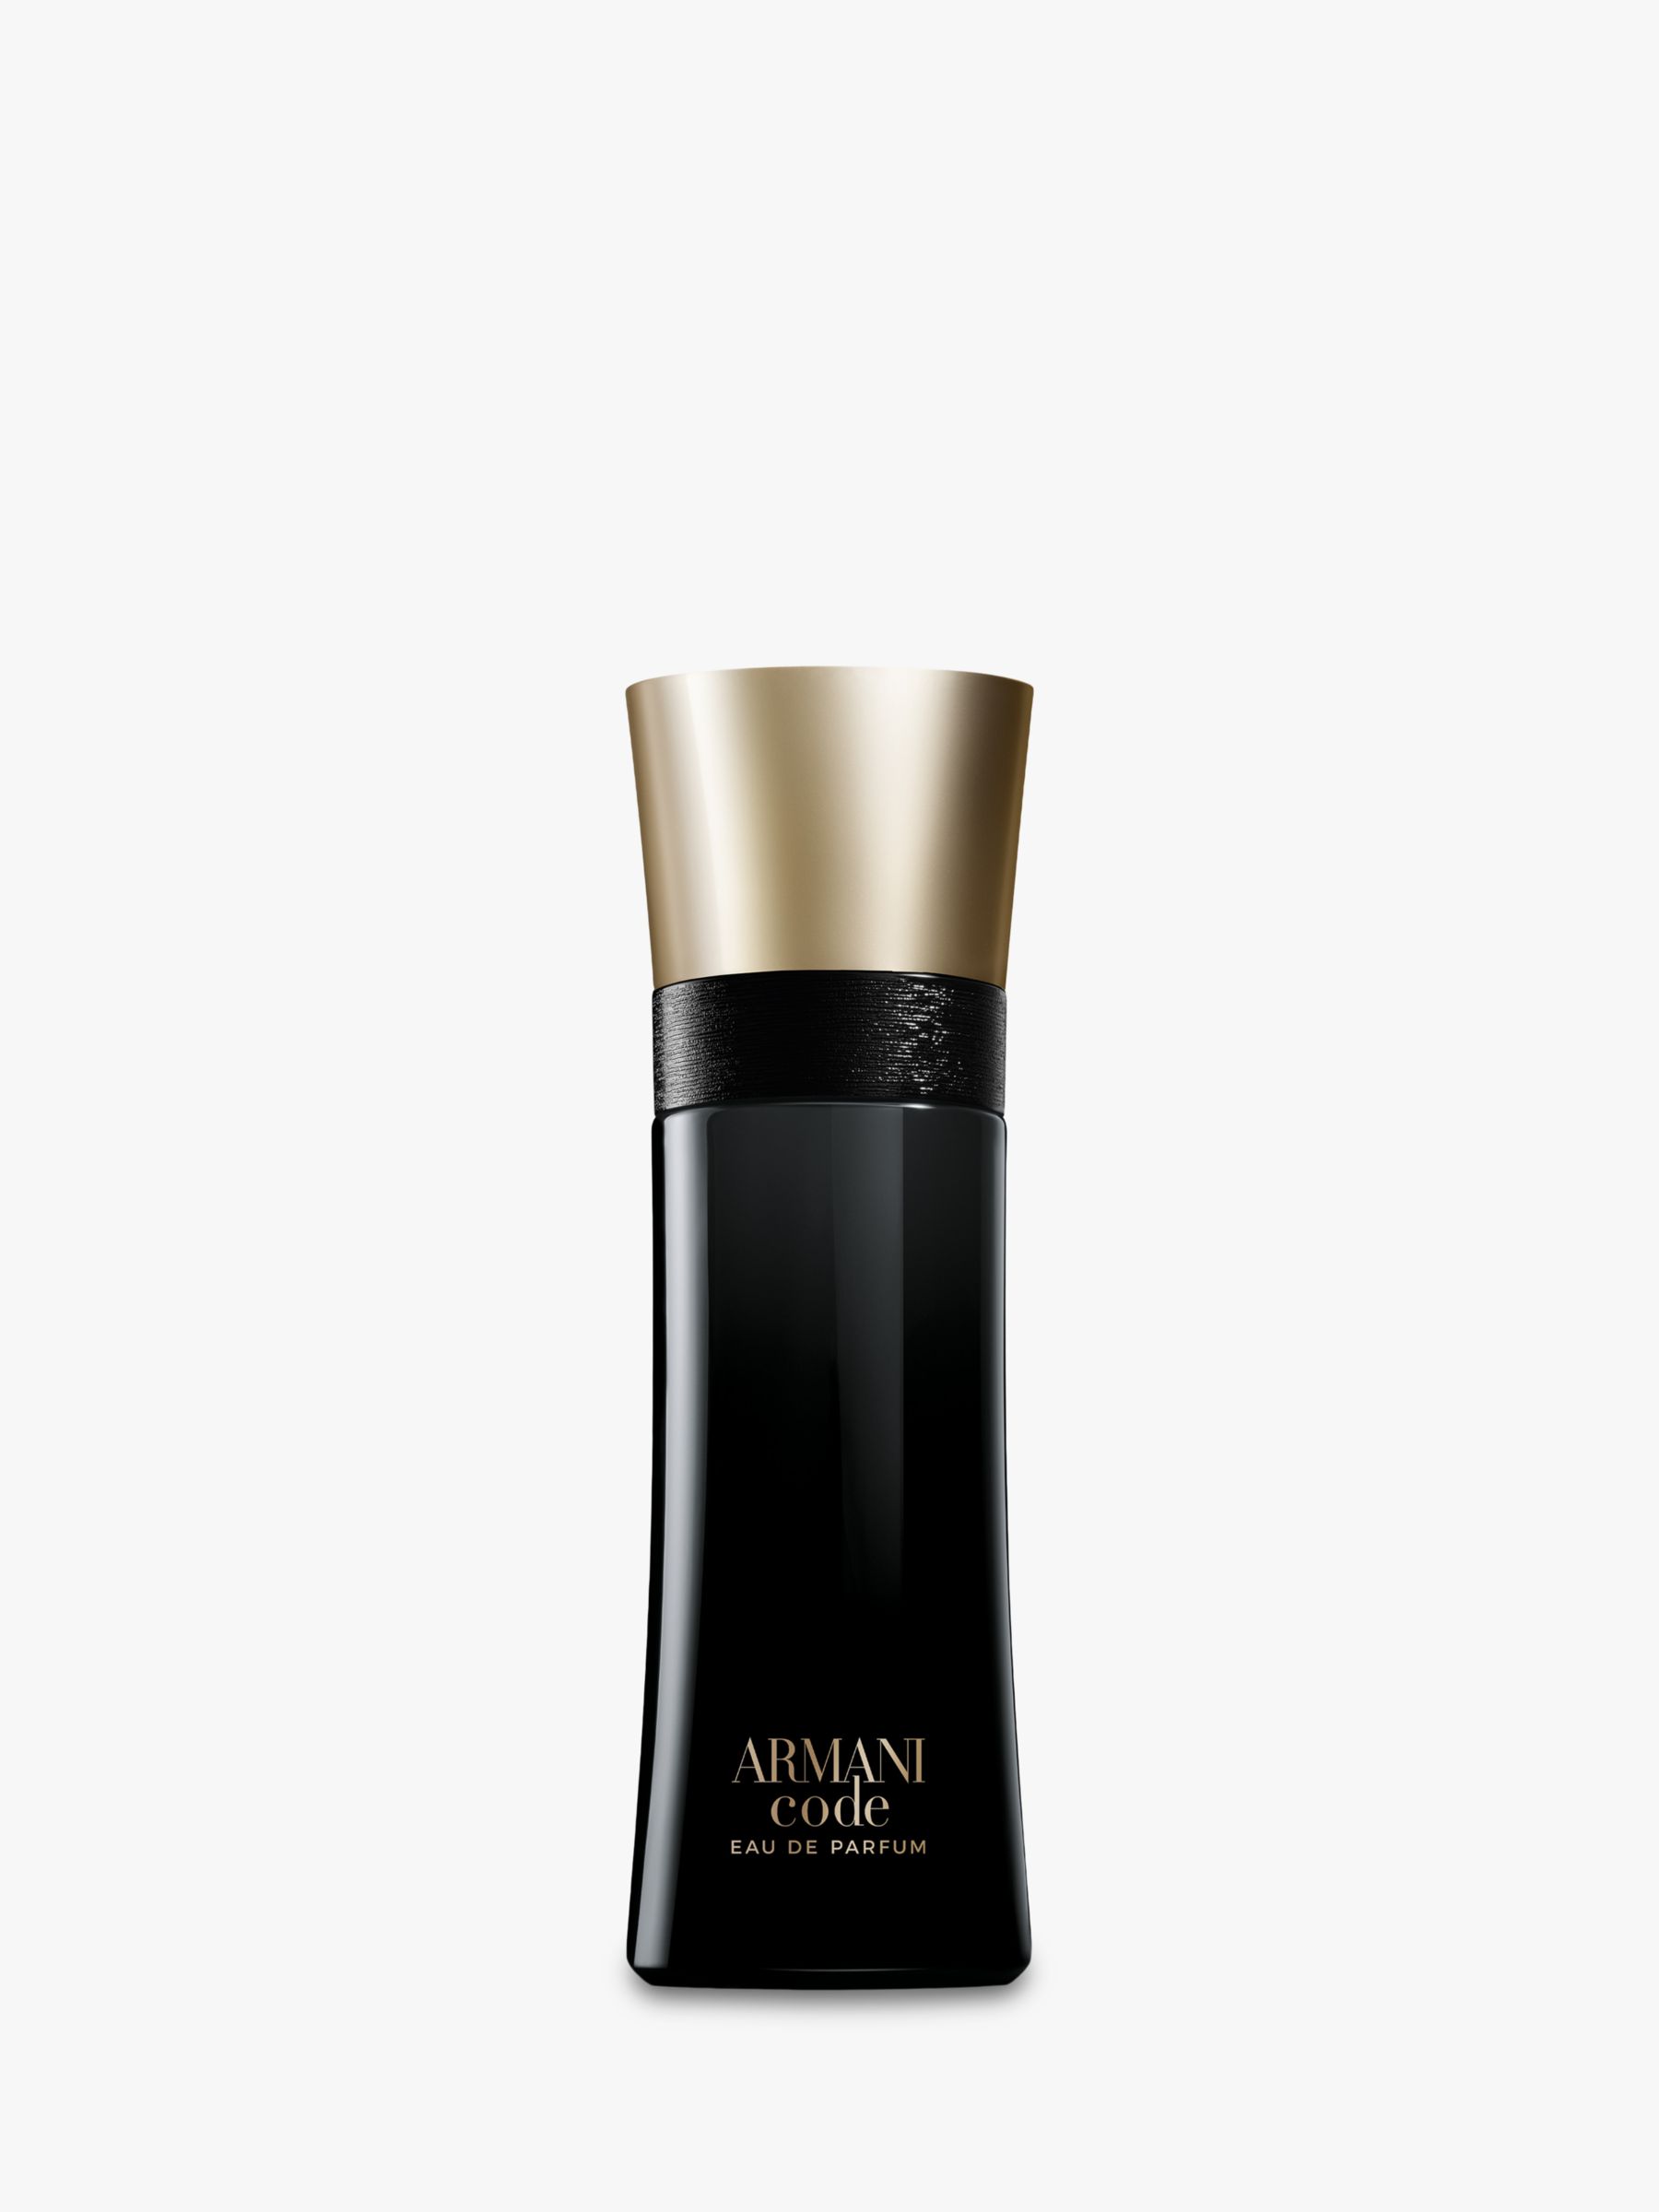 Giorgio Armani Armani Code Pour Homme Eau de Parfum, 60ml at John Lewis &  Partners